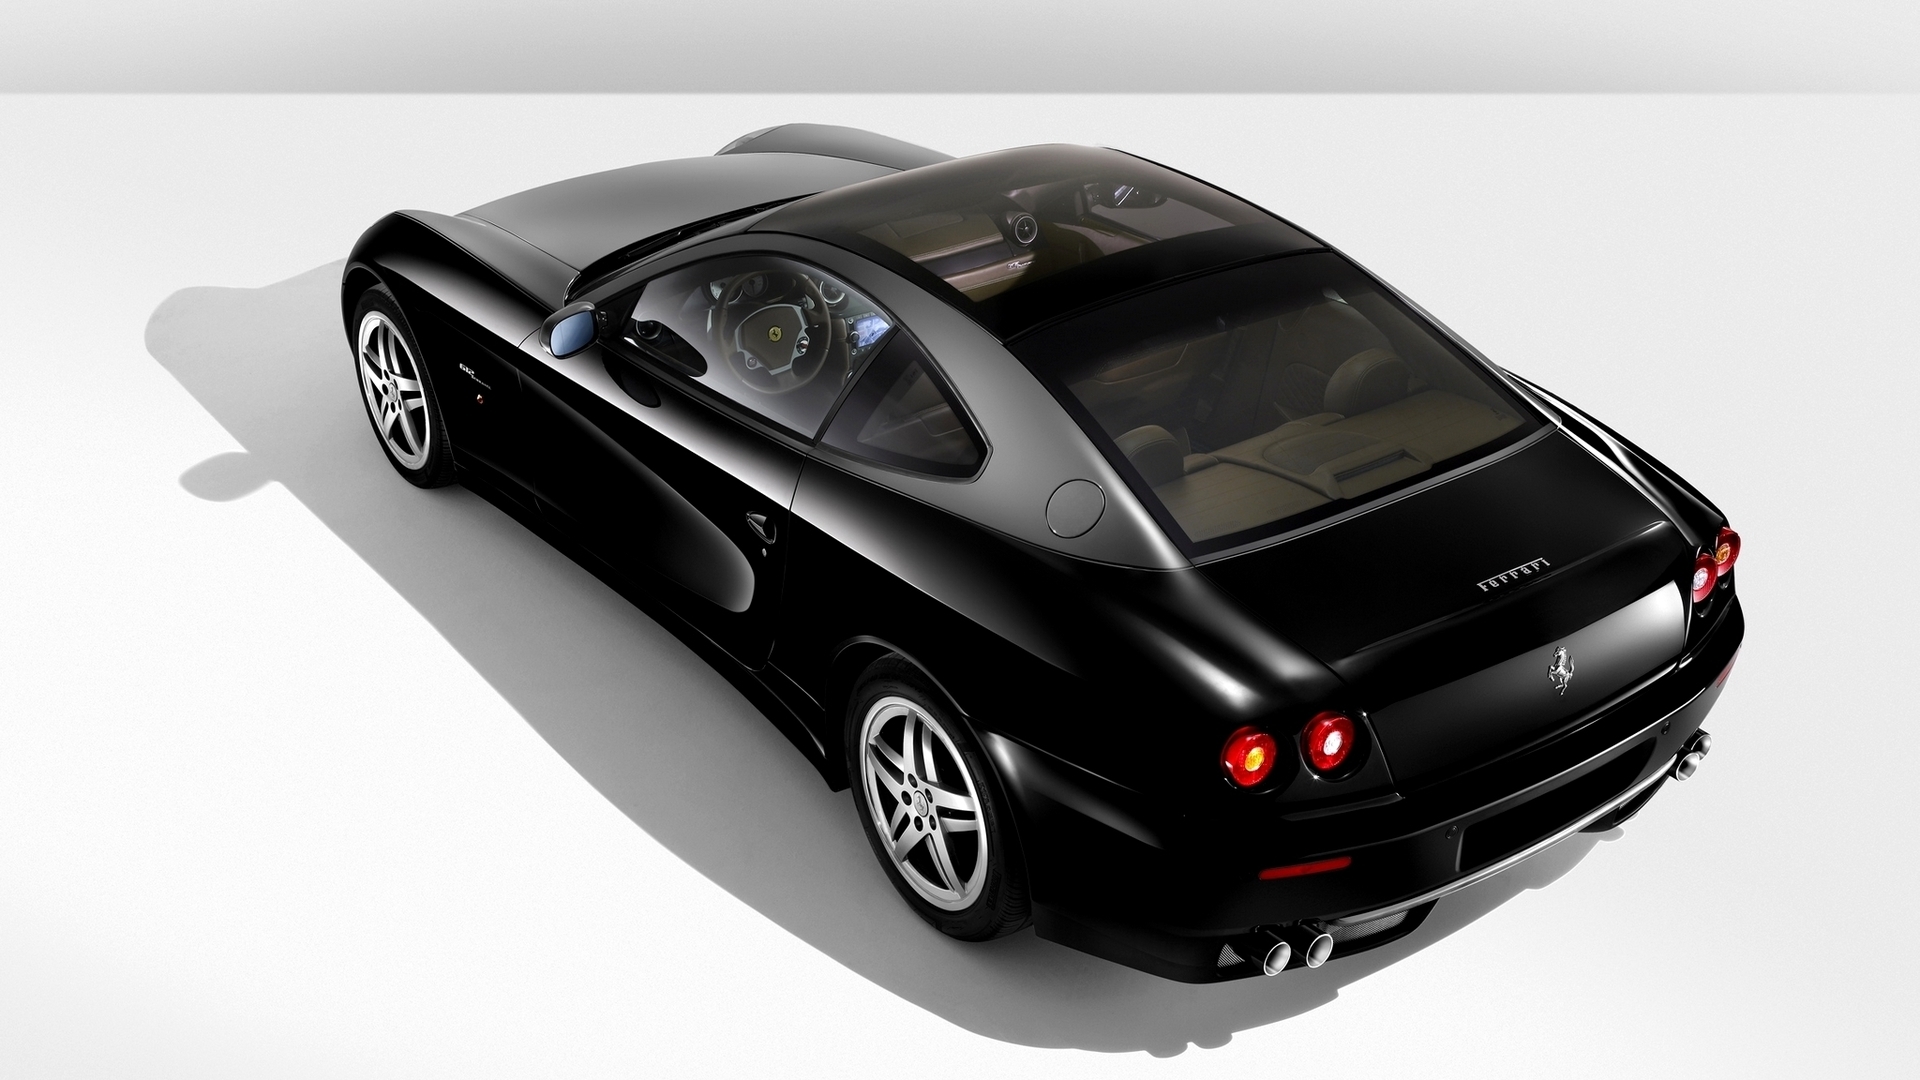 Ferrari 612 Black for 1920 x 1080 HDTV 1080p resolution